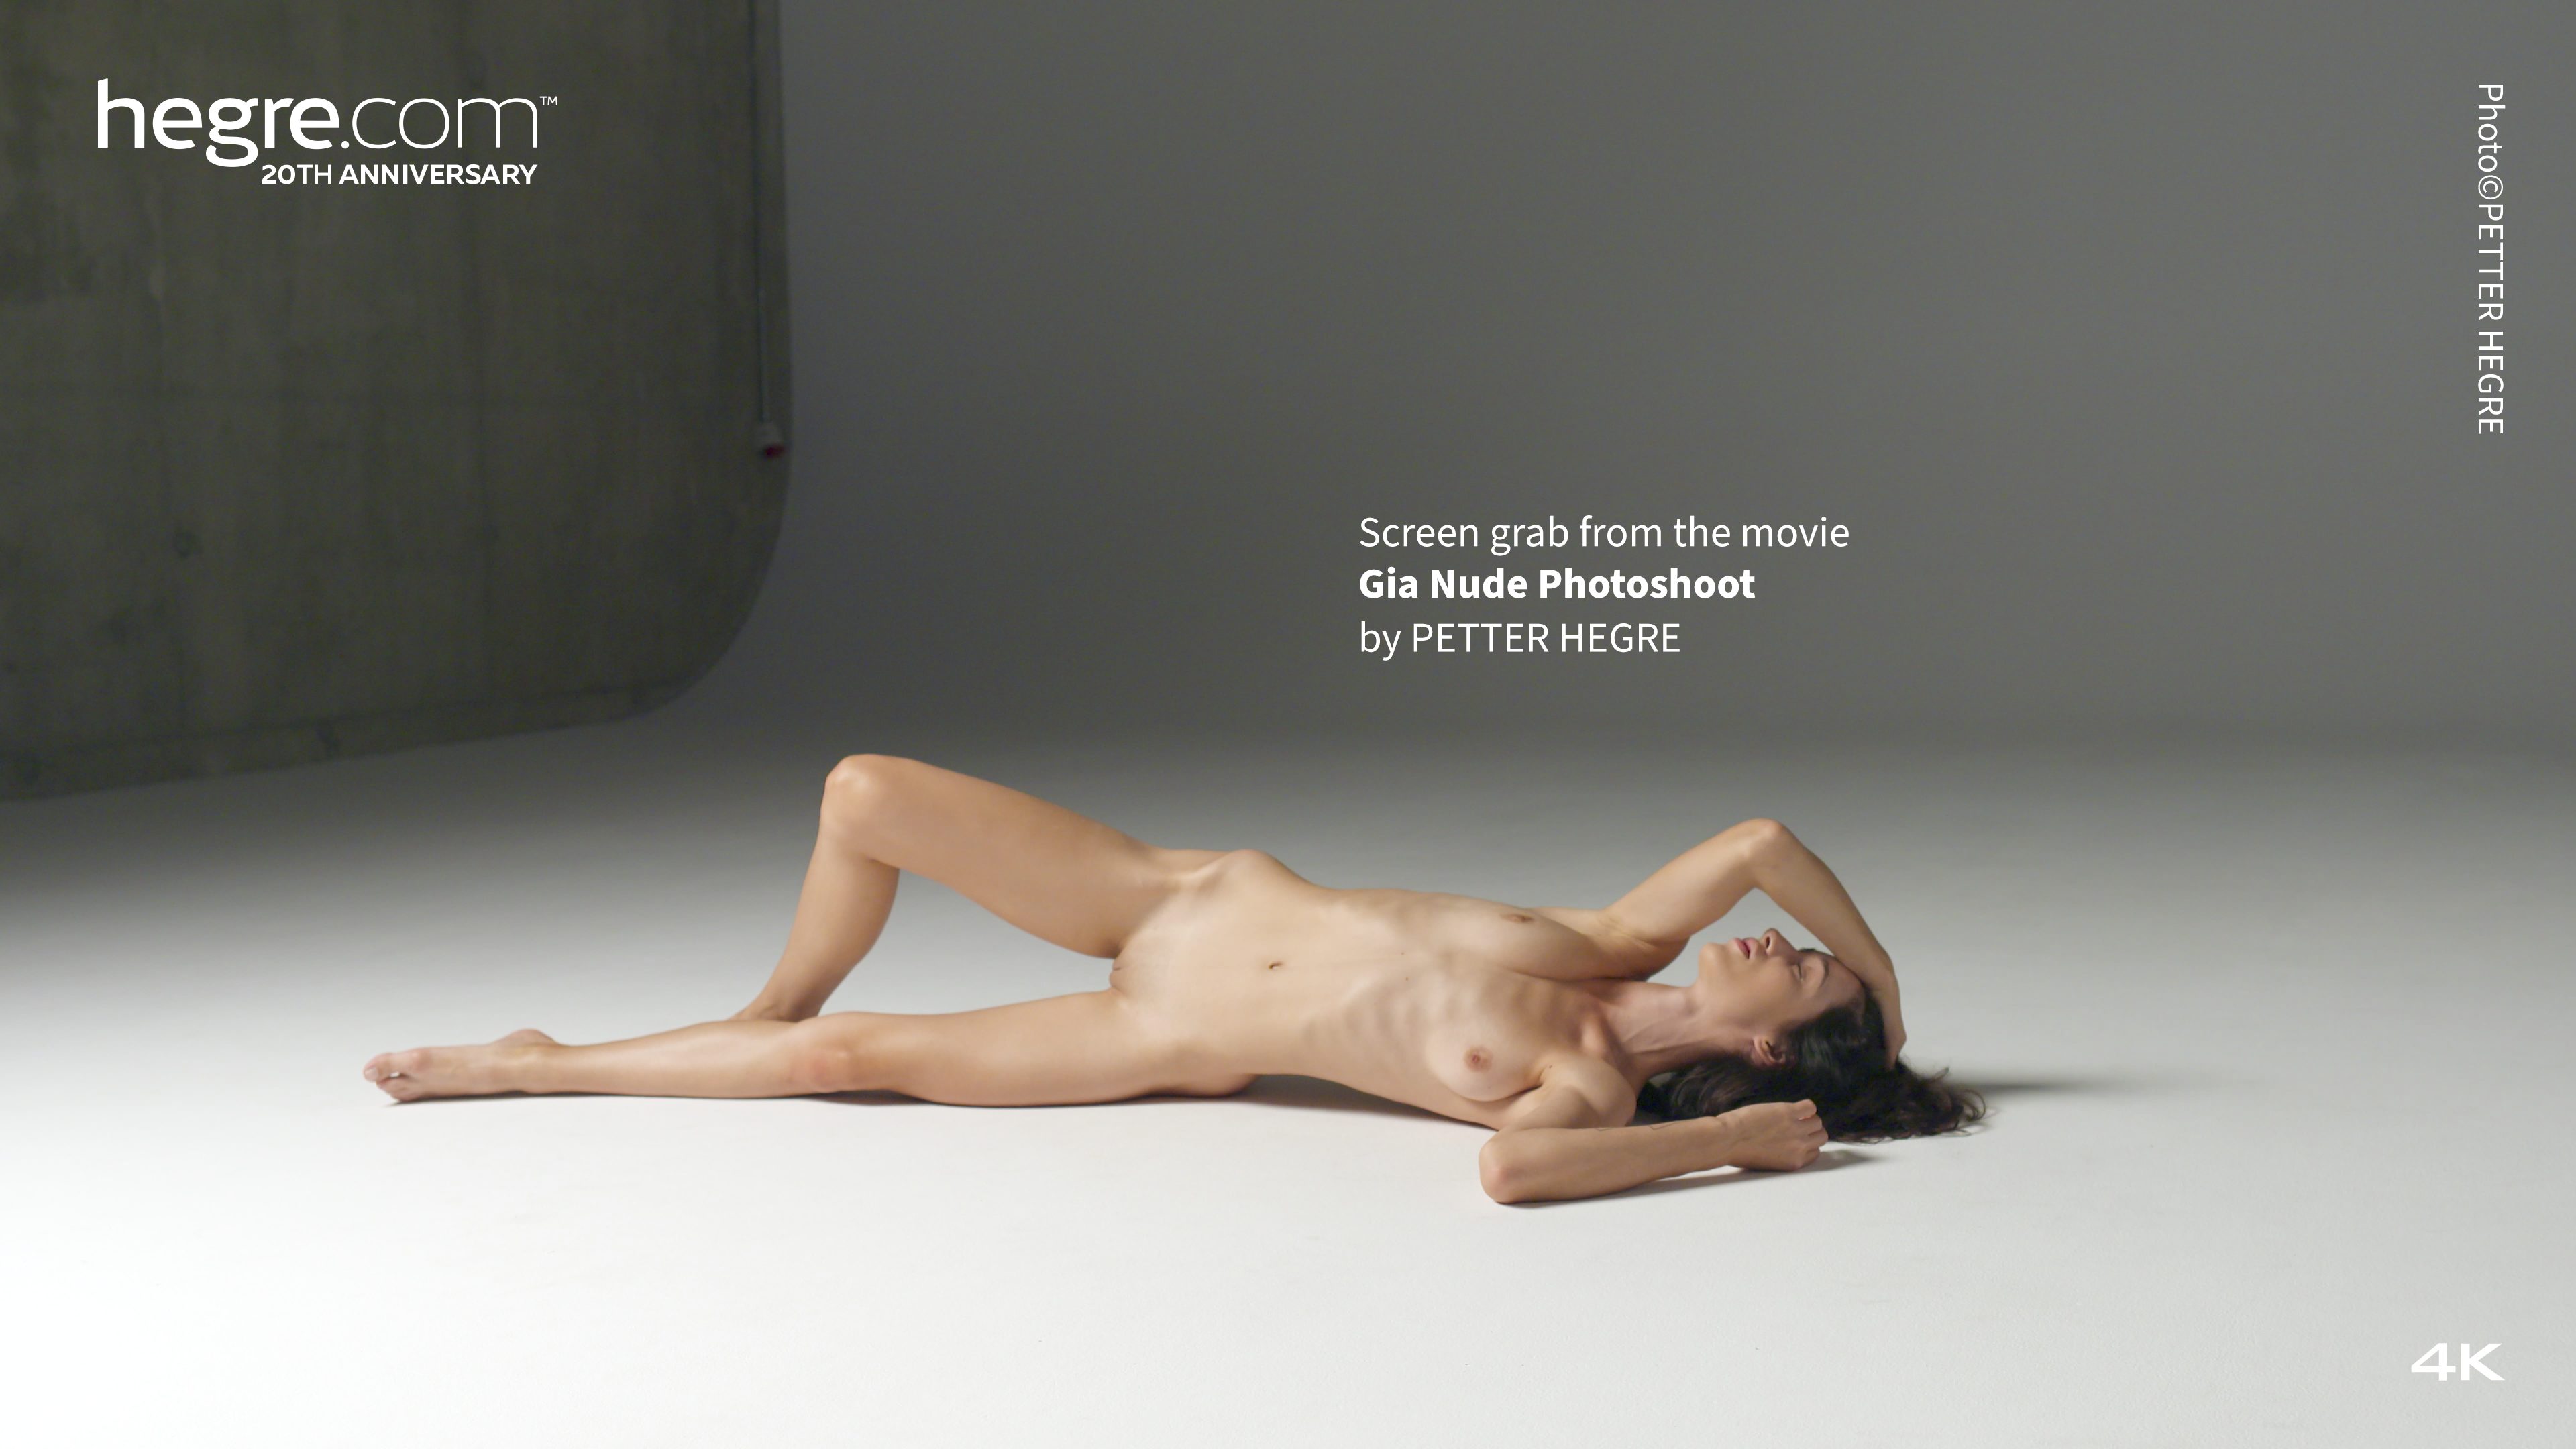 gia nude photoshoot poster 23